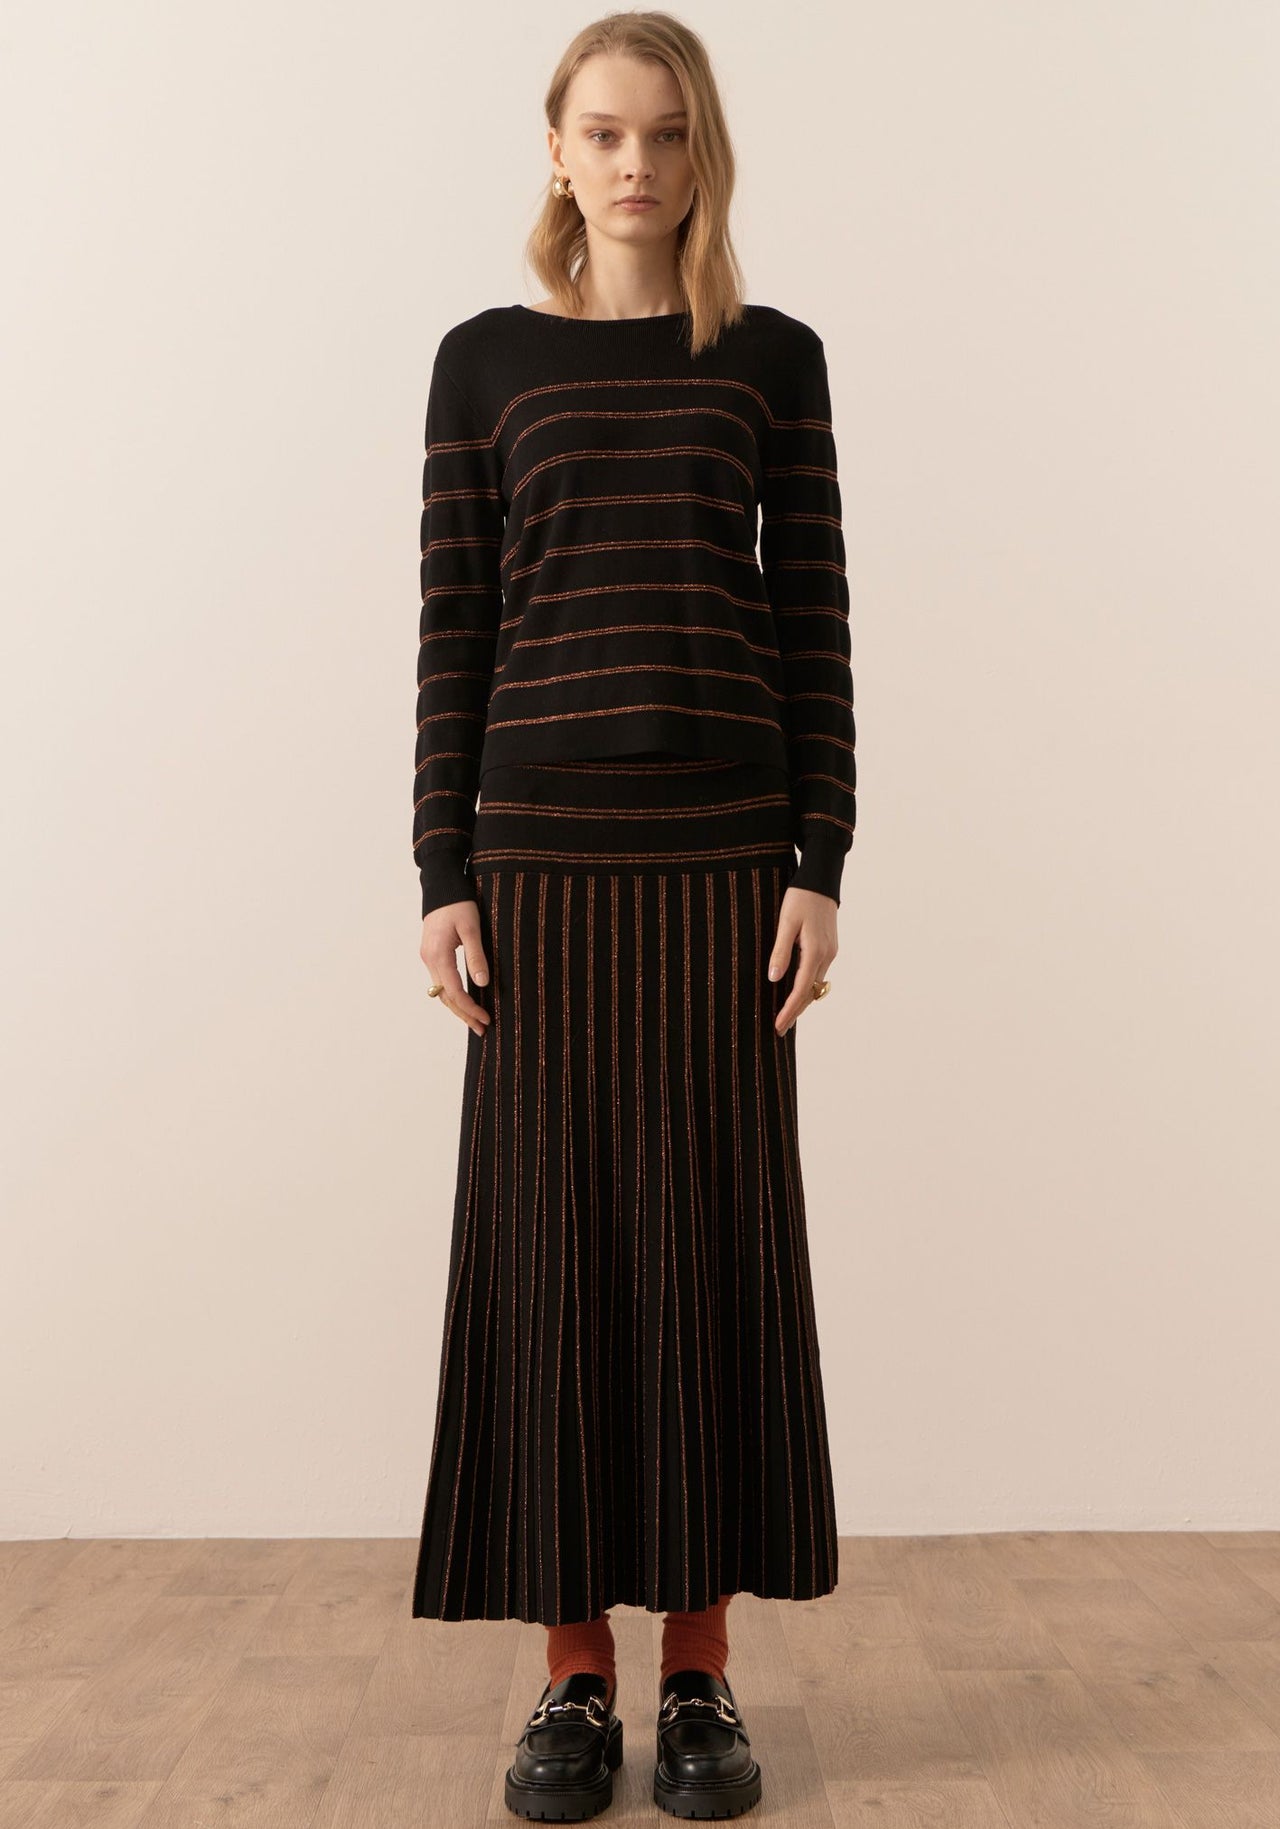 POL Clothing Gizelle Lurex Striped Knit | Black/Copper